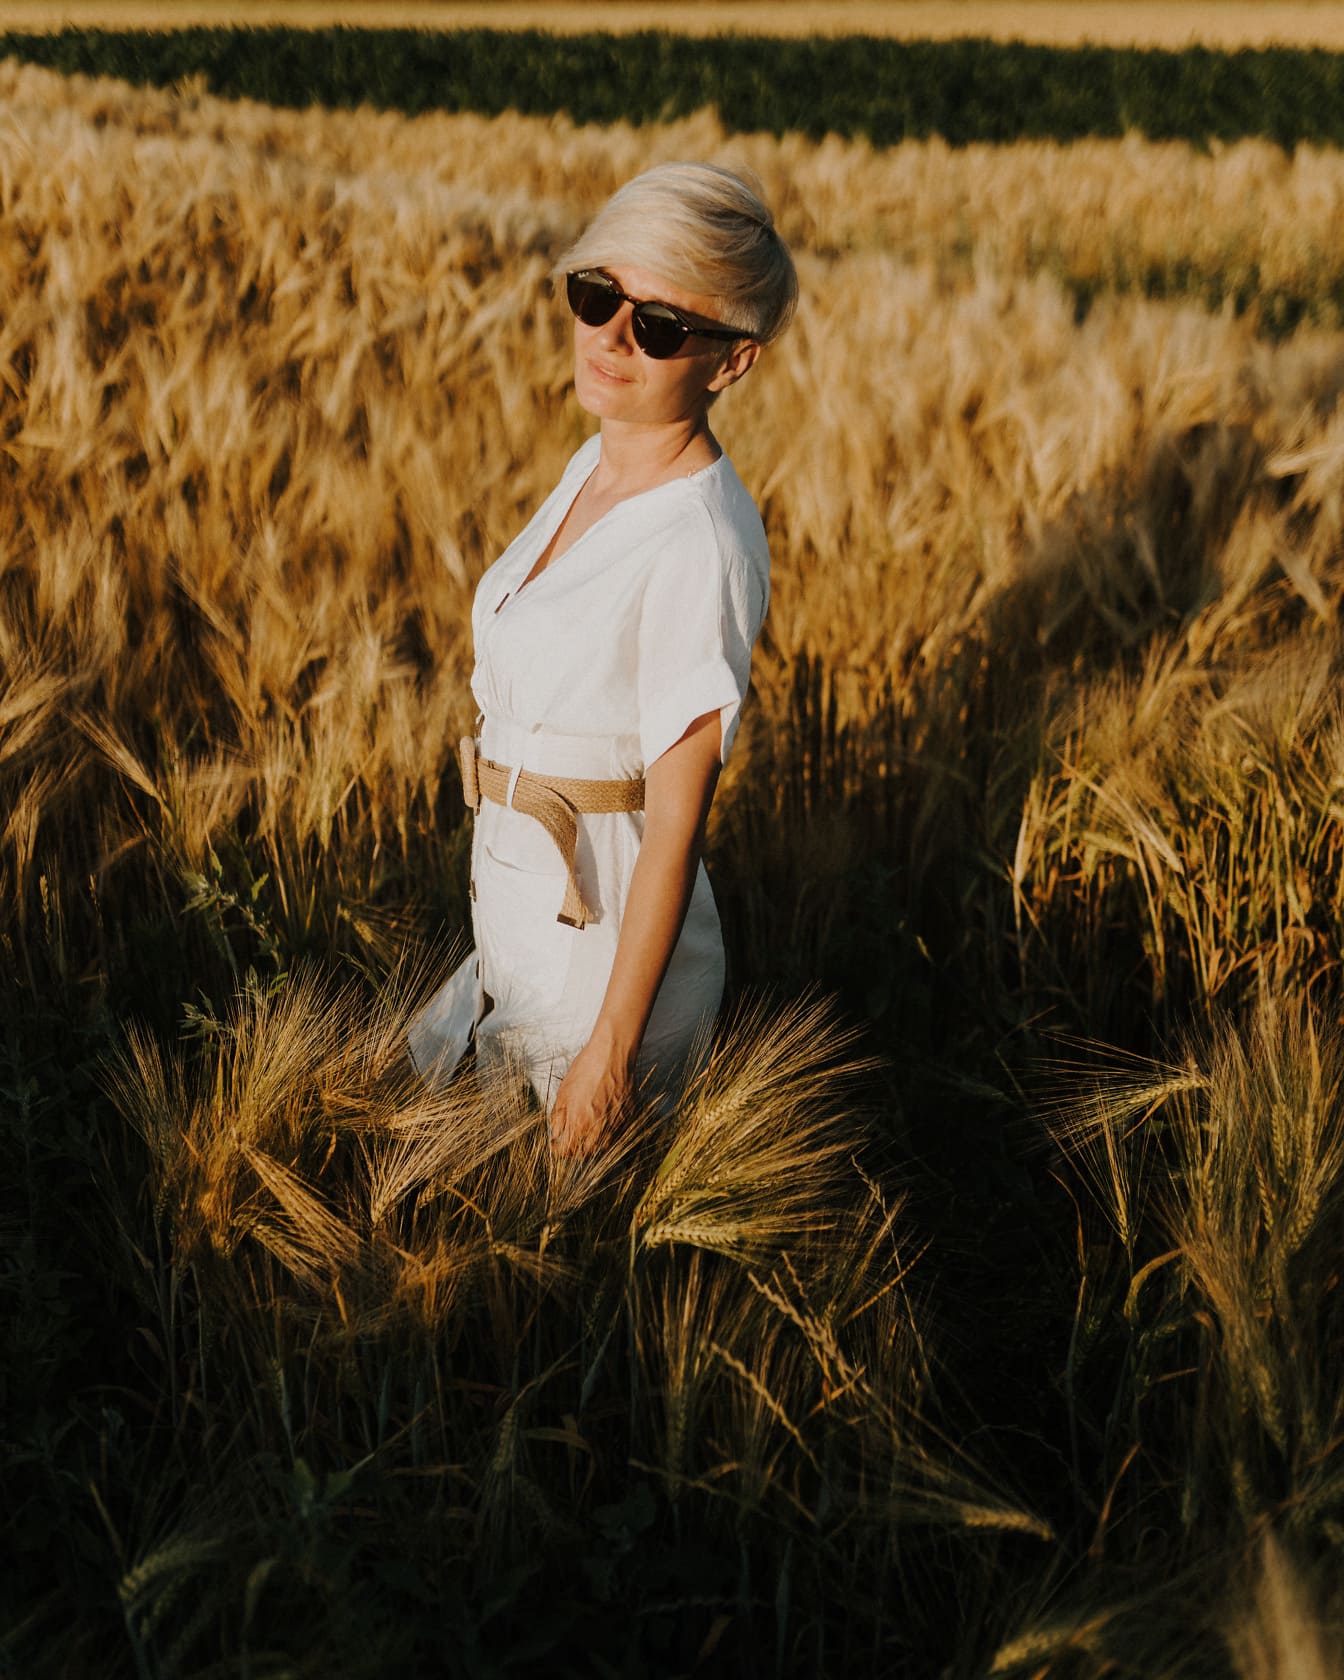 Nätt kvinna med solglasögon och vit klänning i vetefält i sommar